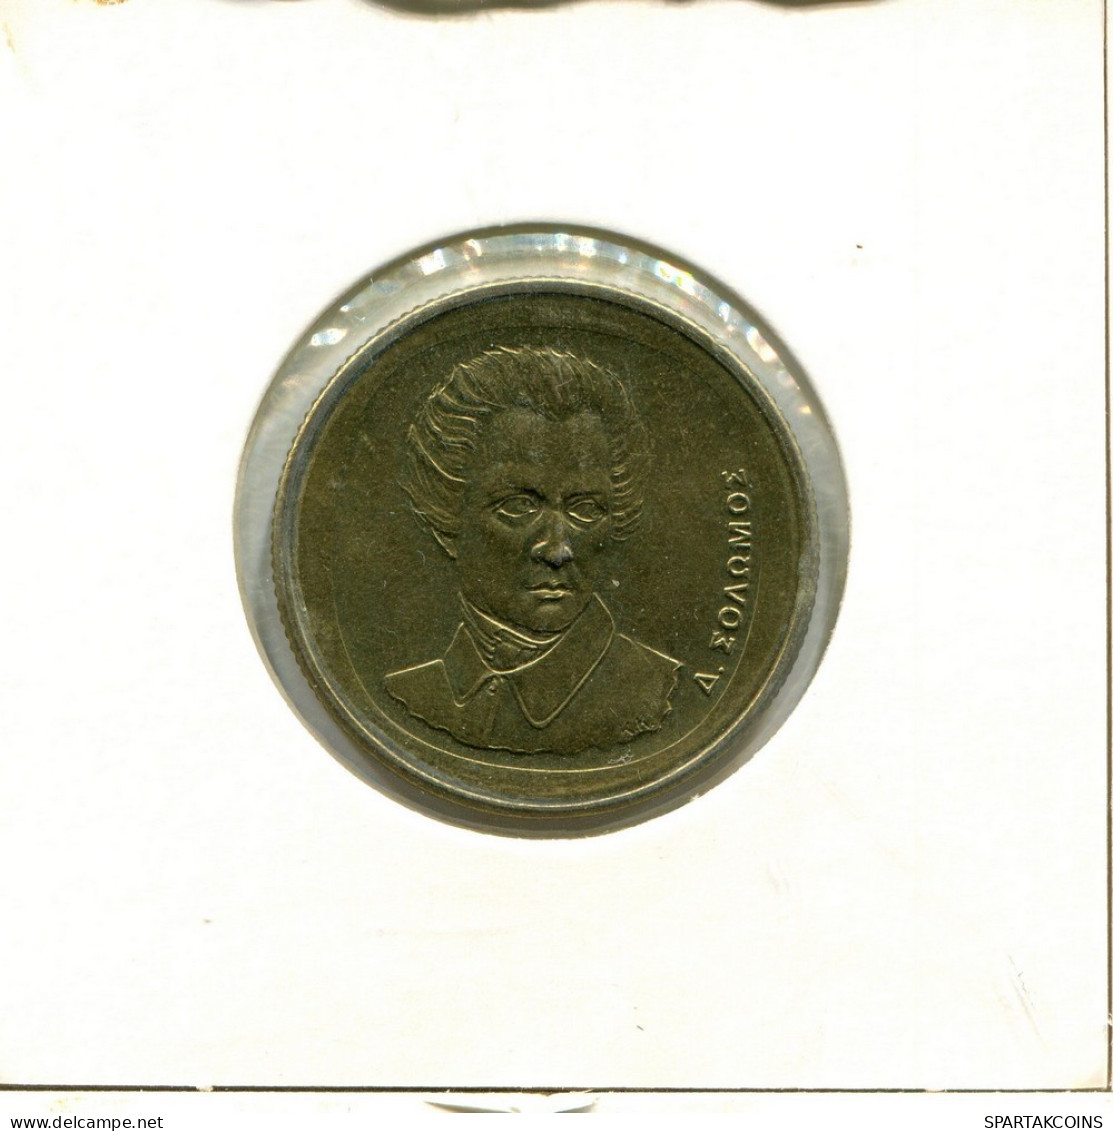 20 DRACHMES 1990 GRECIA GREECE Moneda #AY379.E.A - Greece